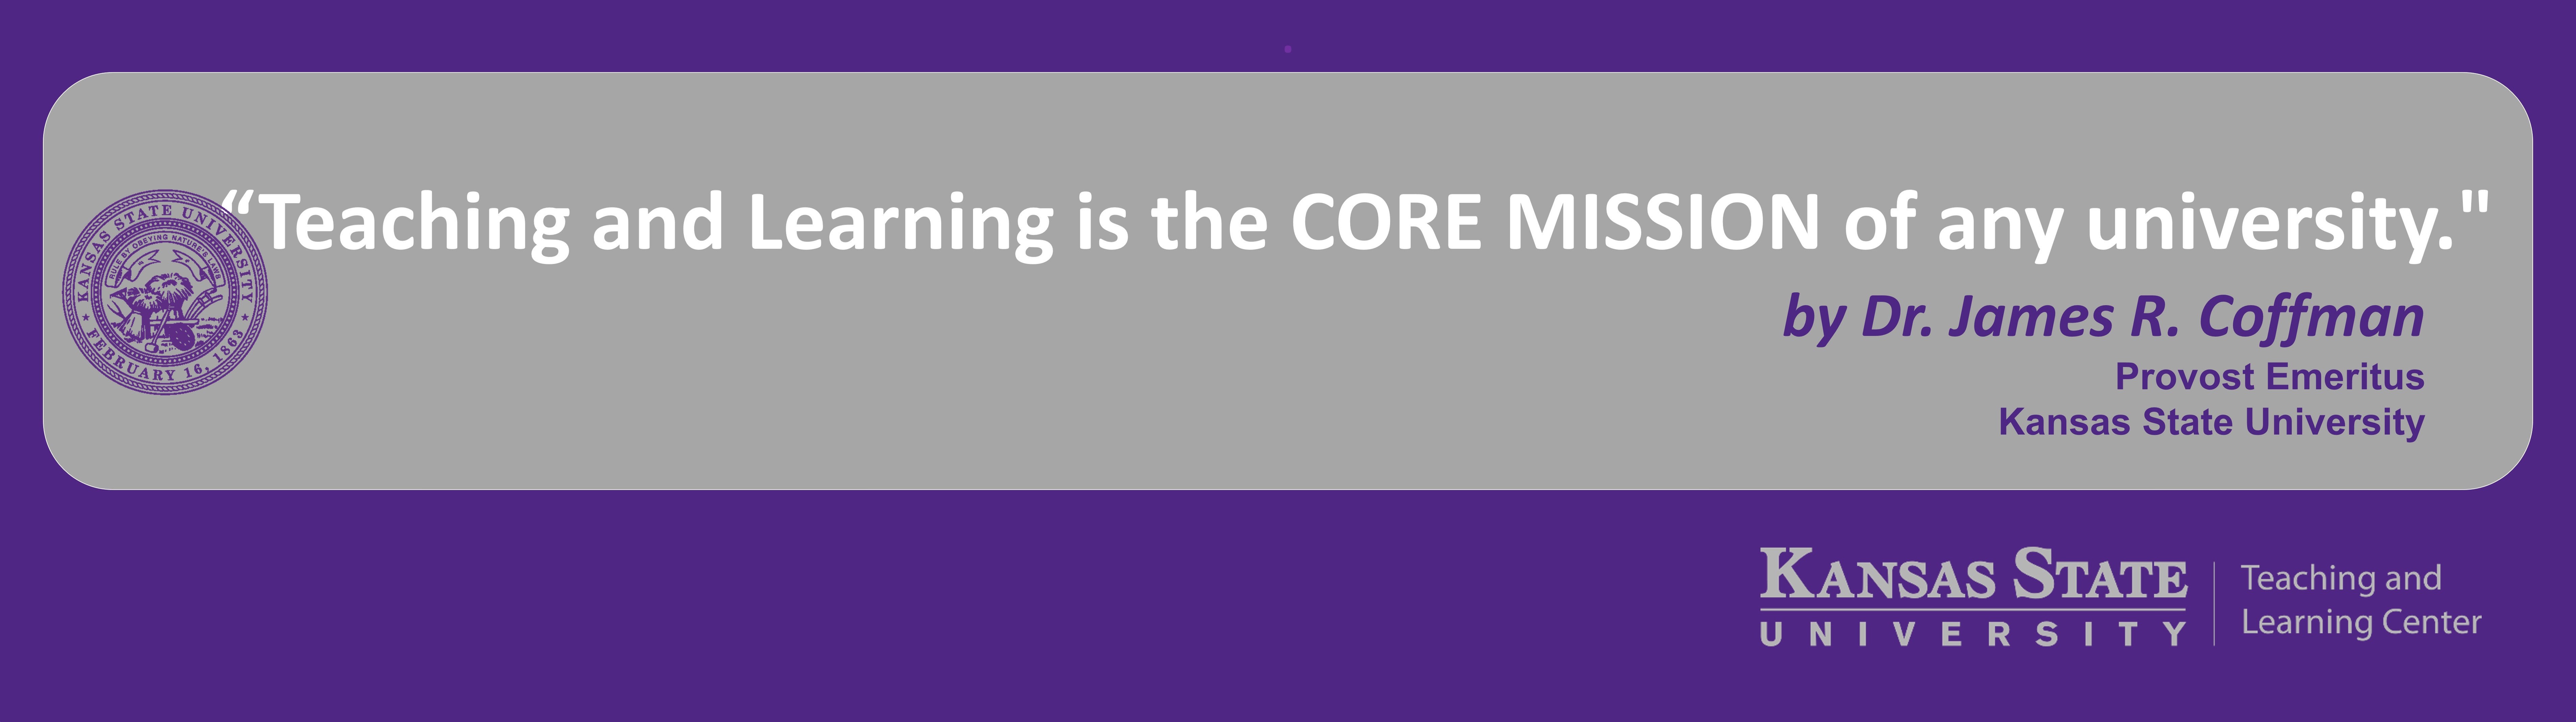 core mission